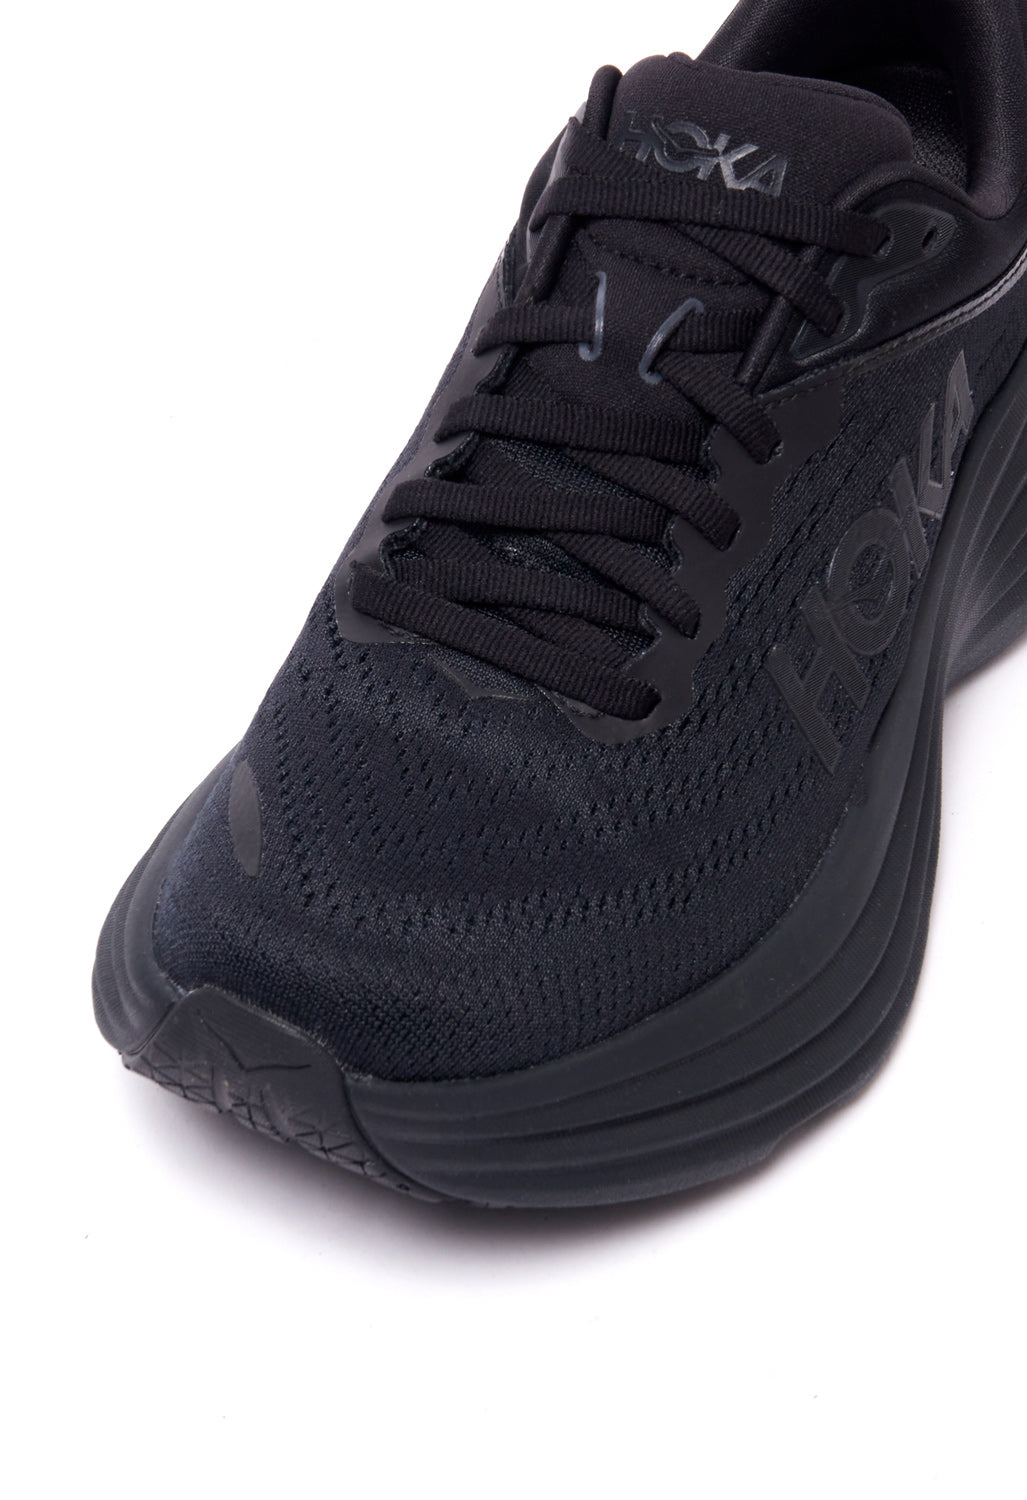 Hoka Bondi 8 Women's Shoes - Black/Black